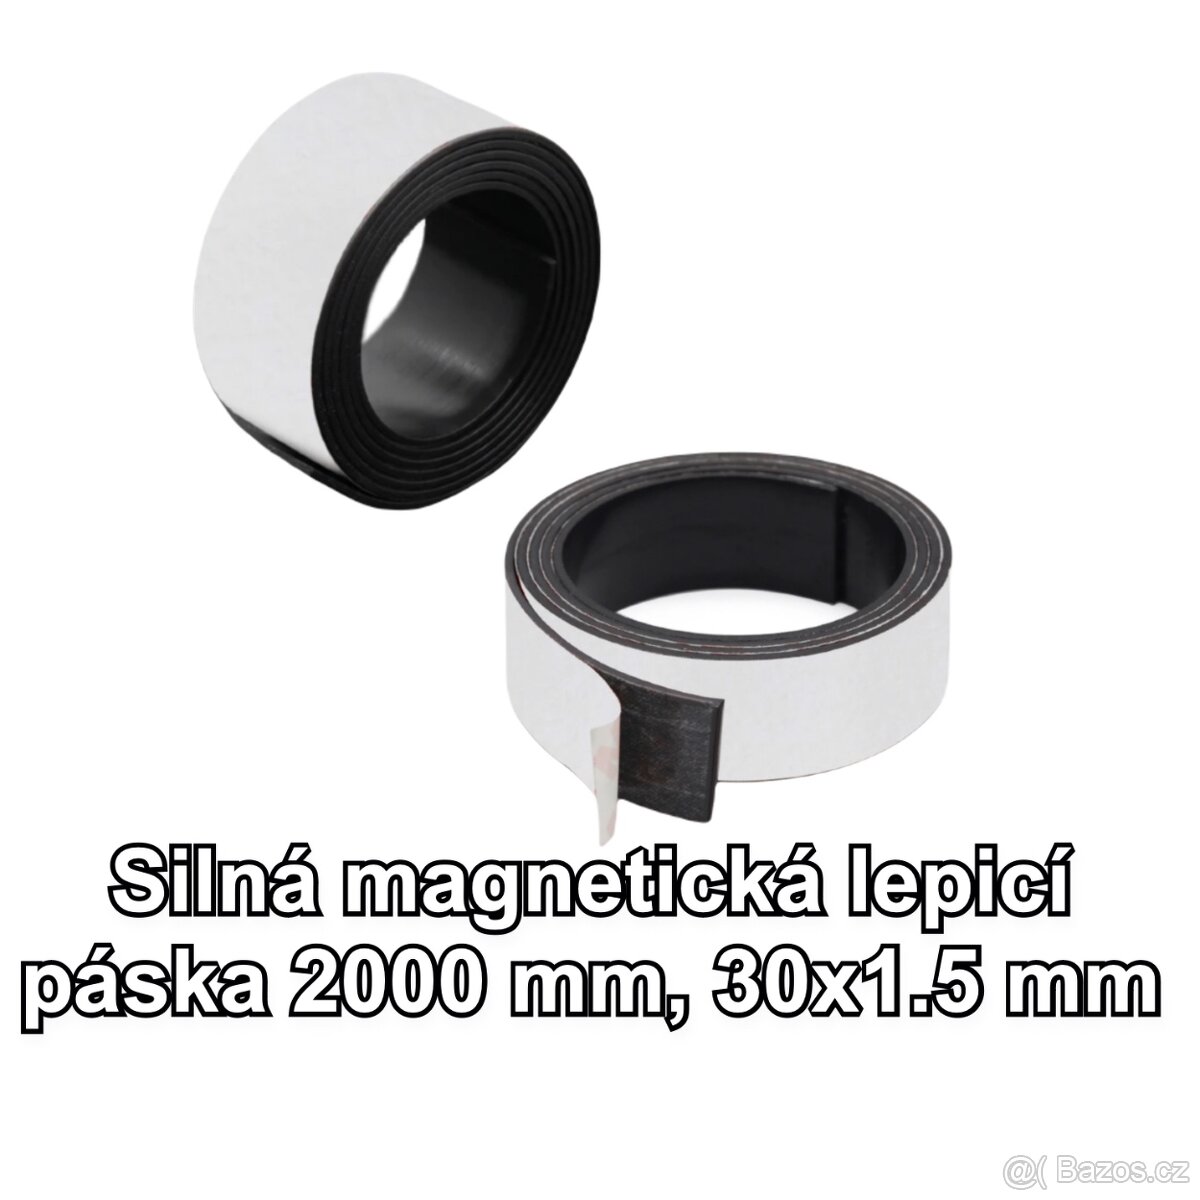 Silná magnetická lepicí páska 2000 mm, 30x1.5 mm